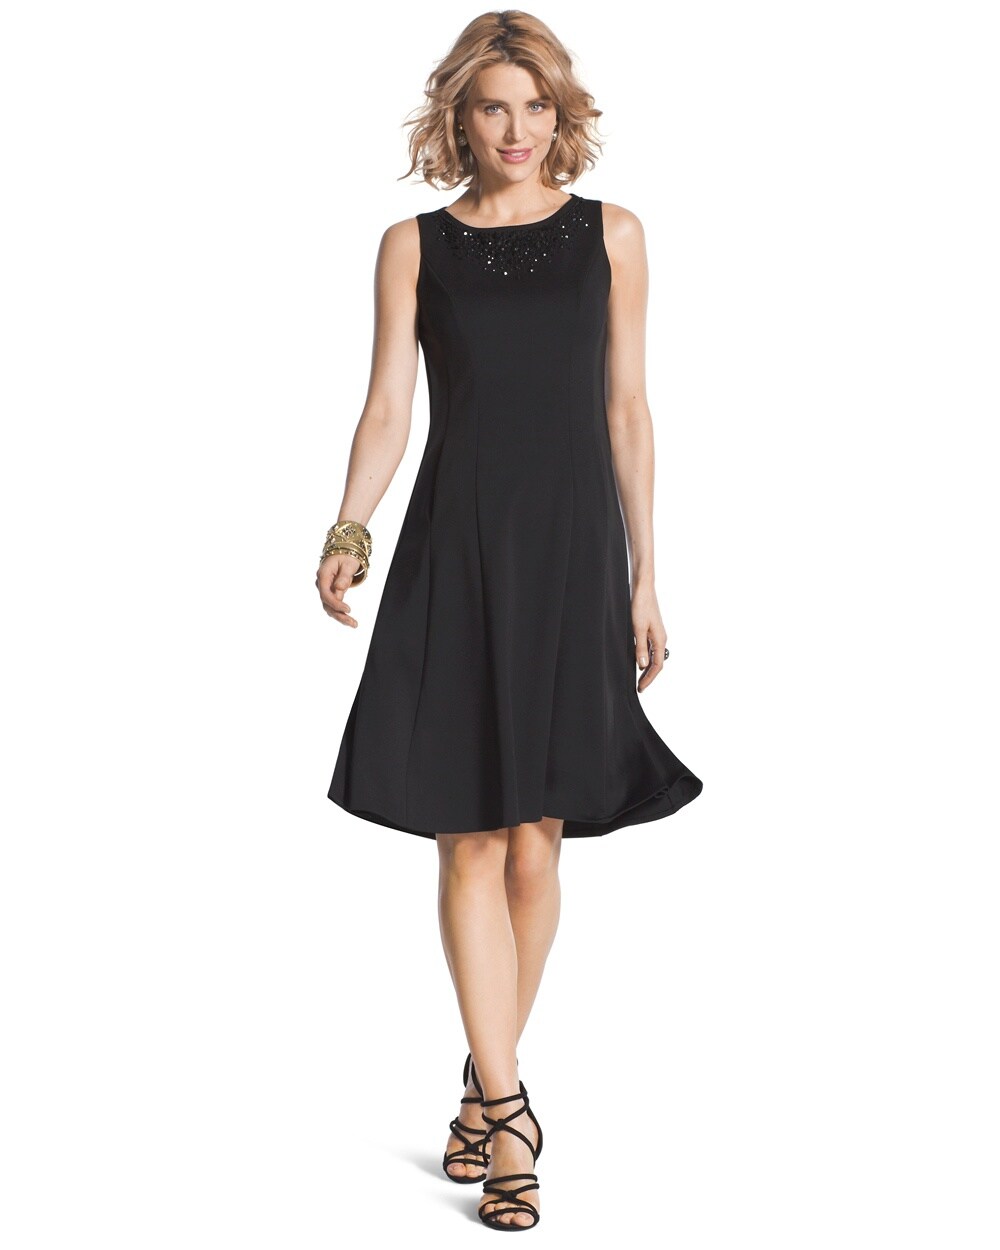 Embellished Sleeveless Black Dress - Chicos